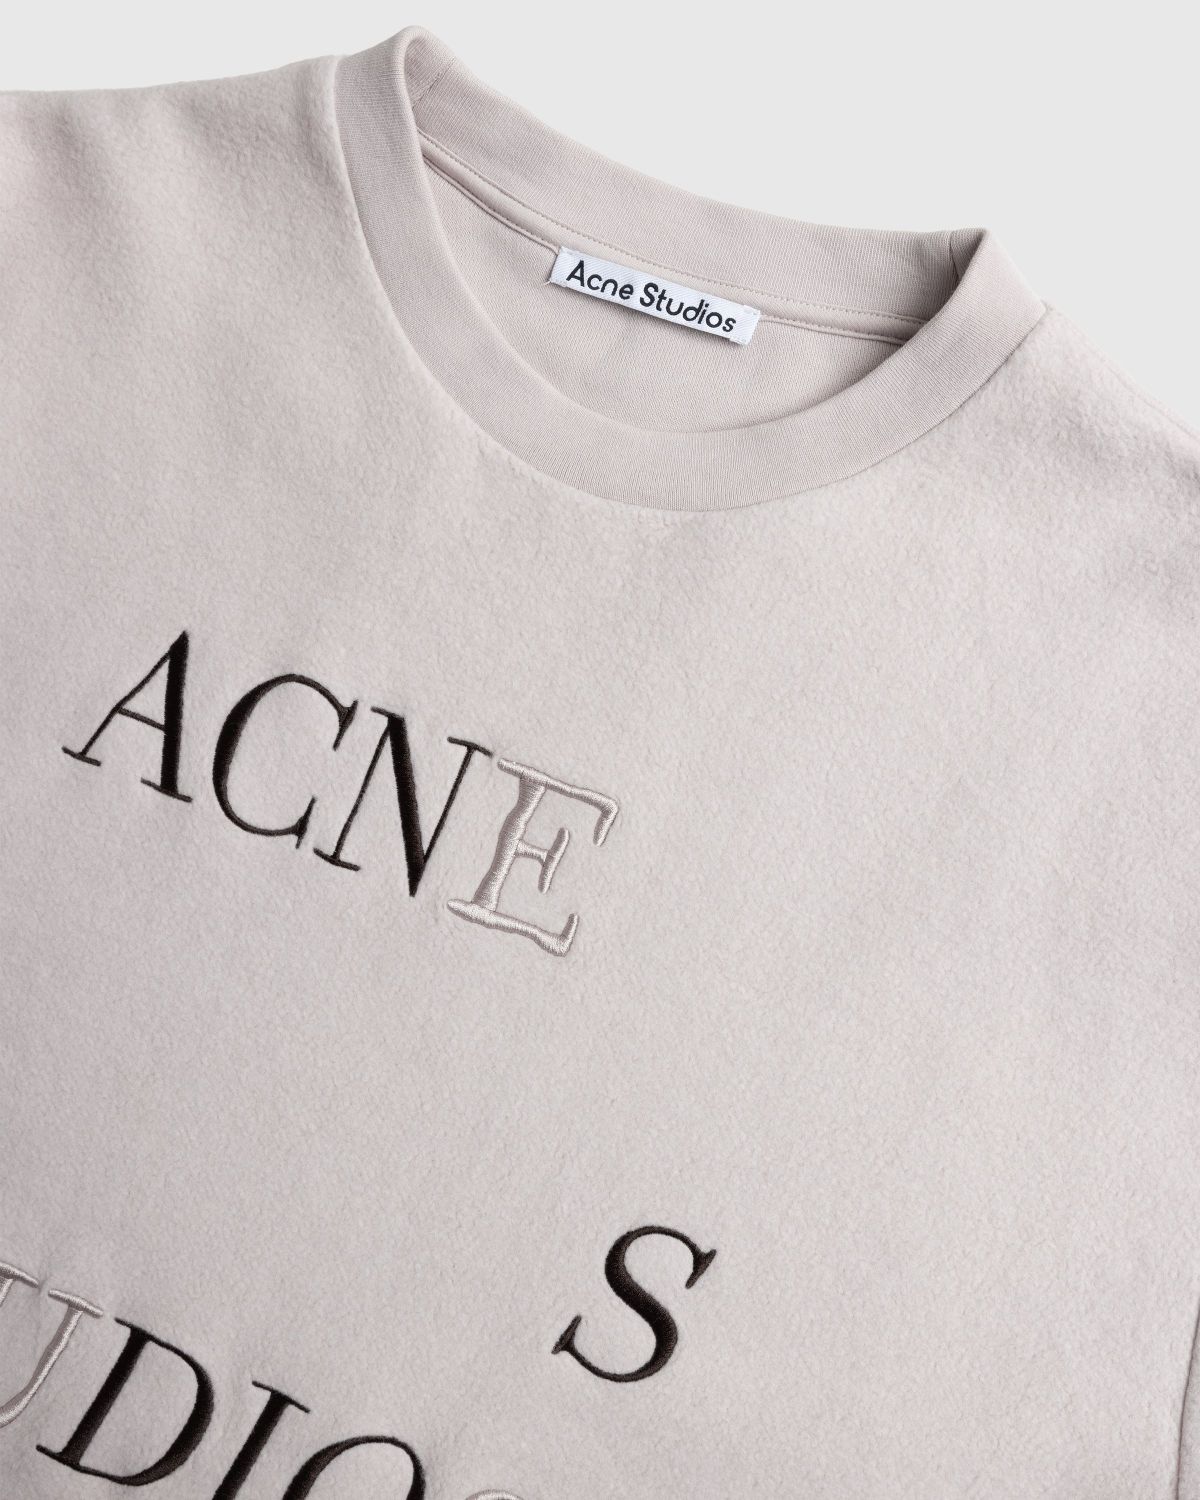 Acne Studios – Logo T-Shirt Beige - Tops - Beige - Image 6